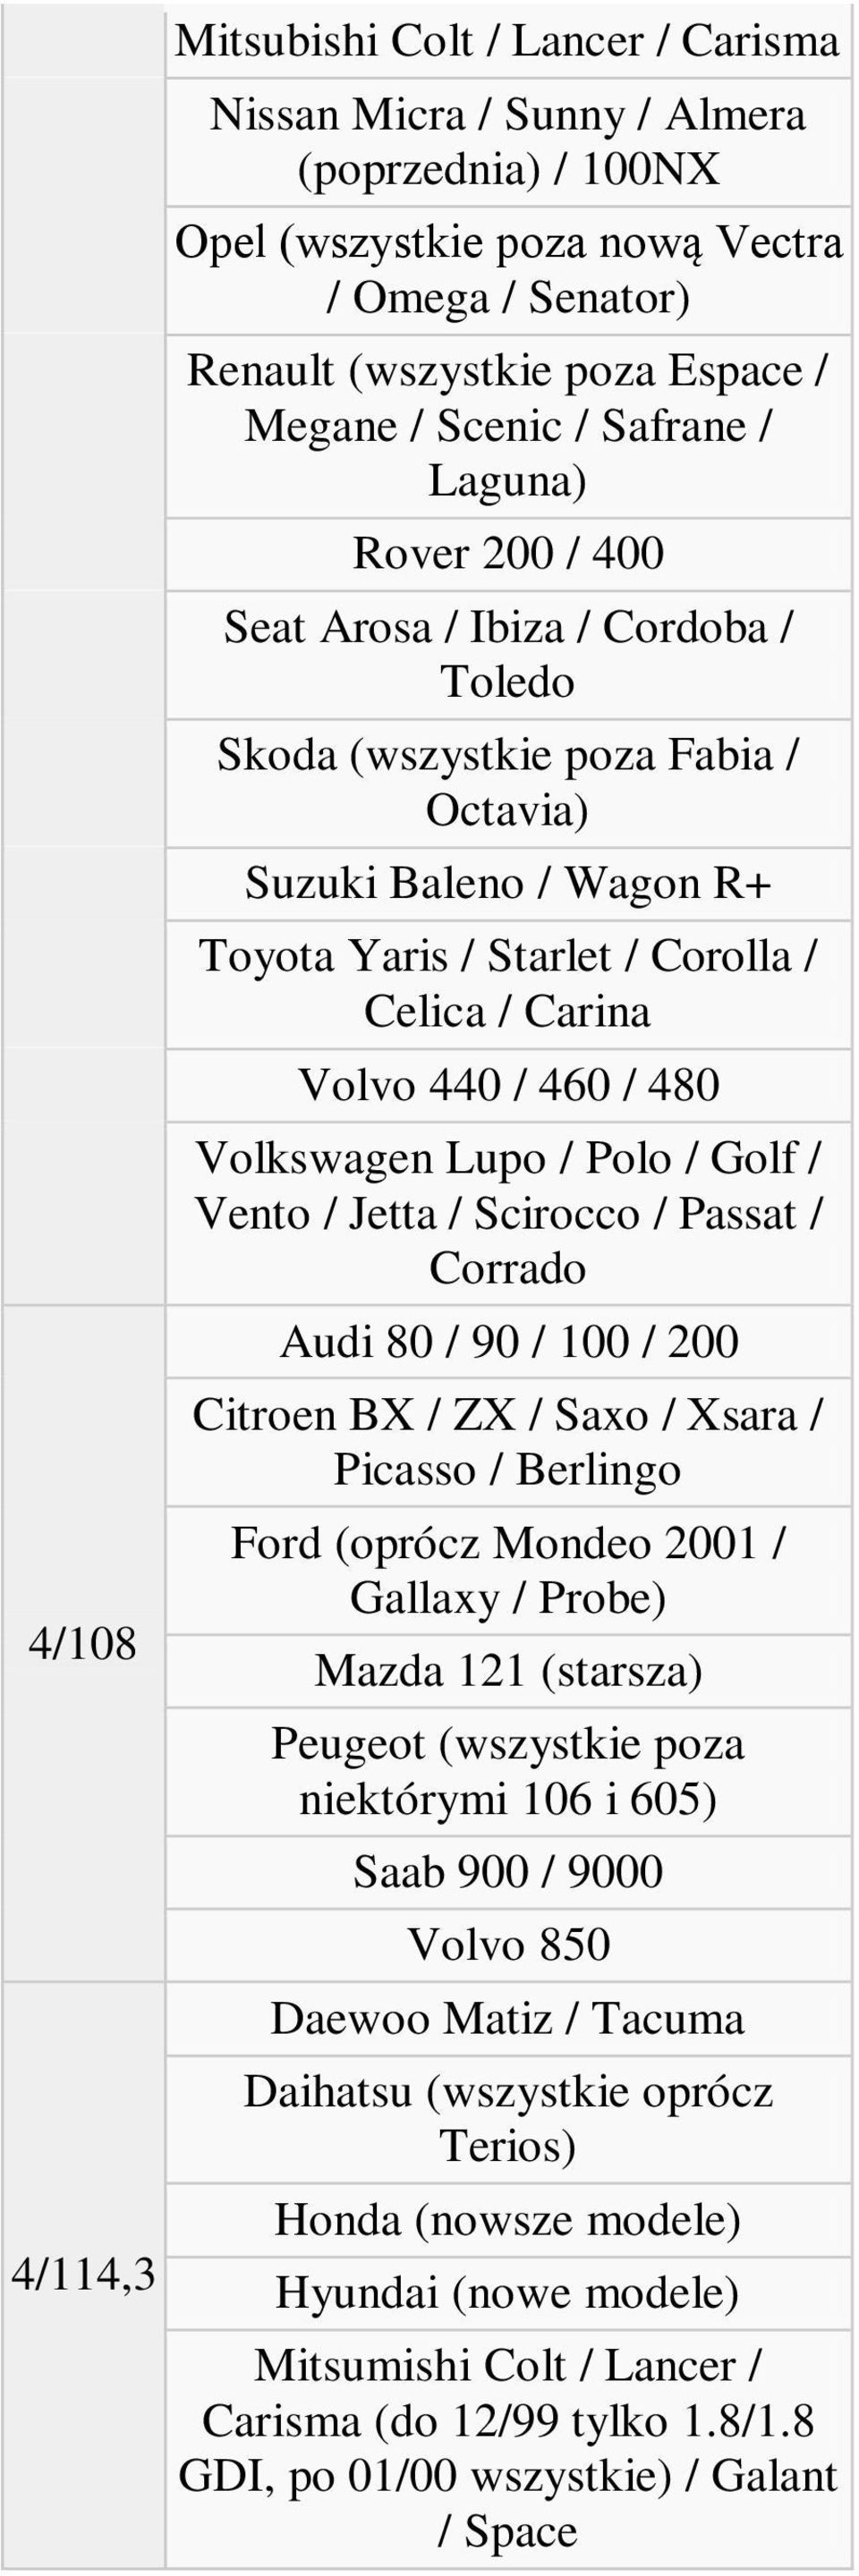 Volvo 440 / 460 / 480 Volkswagen Lupo / Polo / Golf / Vento / Jetta / Scirocco / Passat / Corrado Audi 80 / 90 / 100 / 200 Citroen BX / ZX / Saxo / Xsara / Picasso / Berlingo Ford (oprócz Mondeo 2001